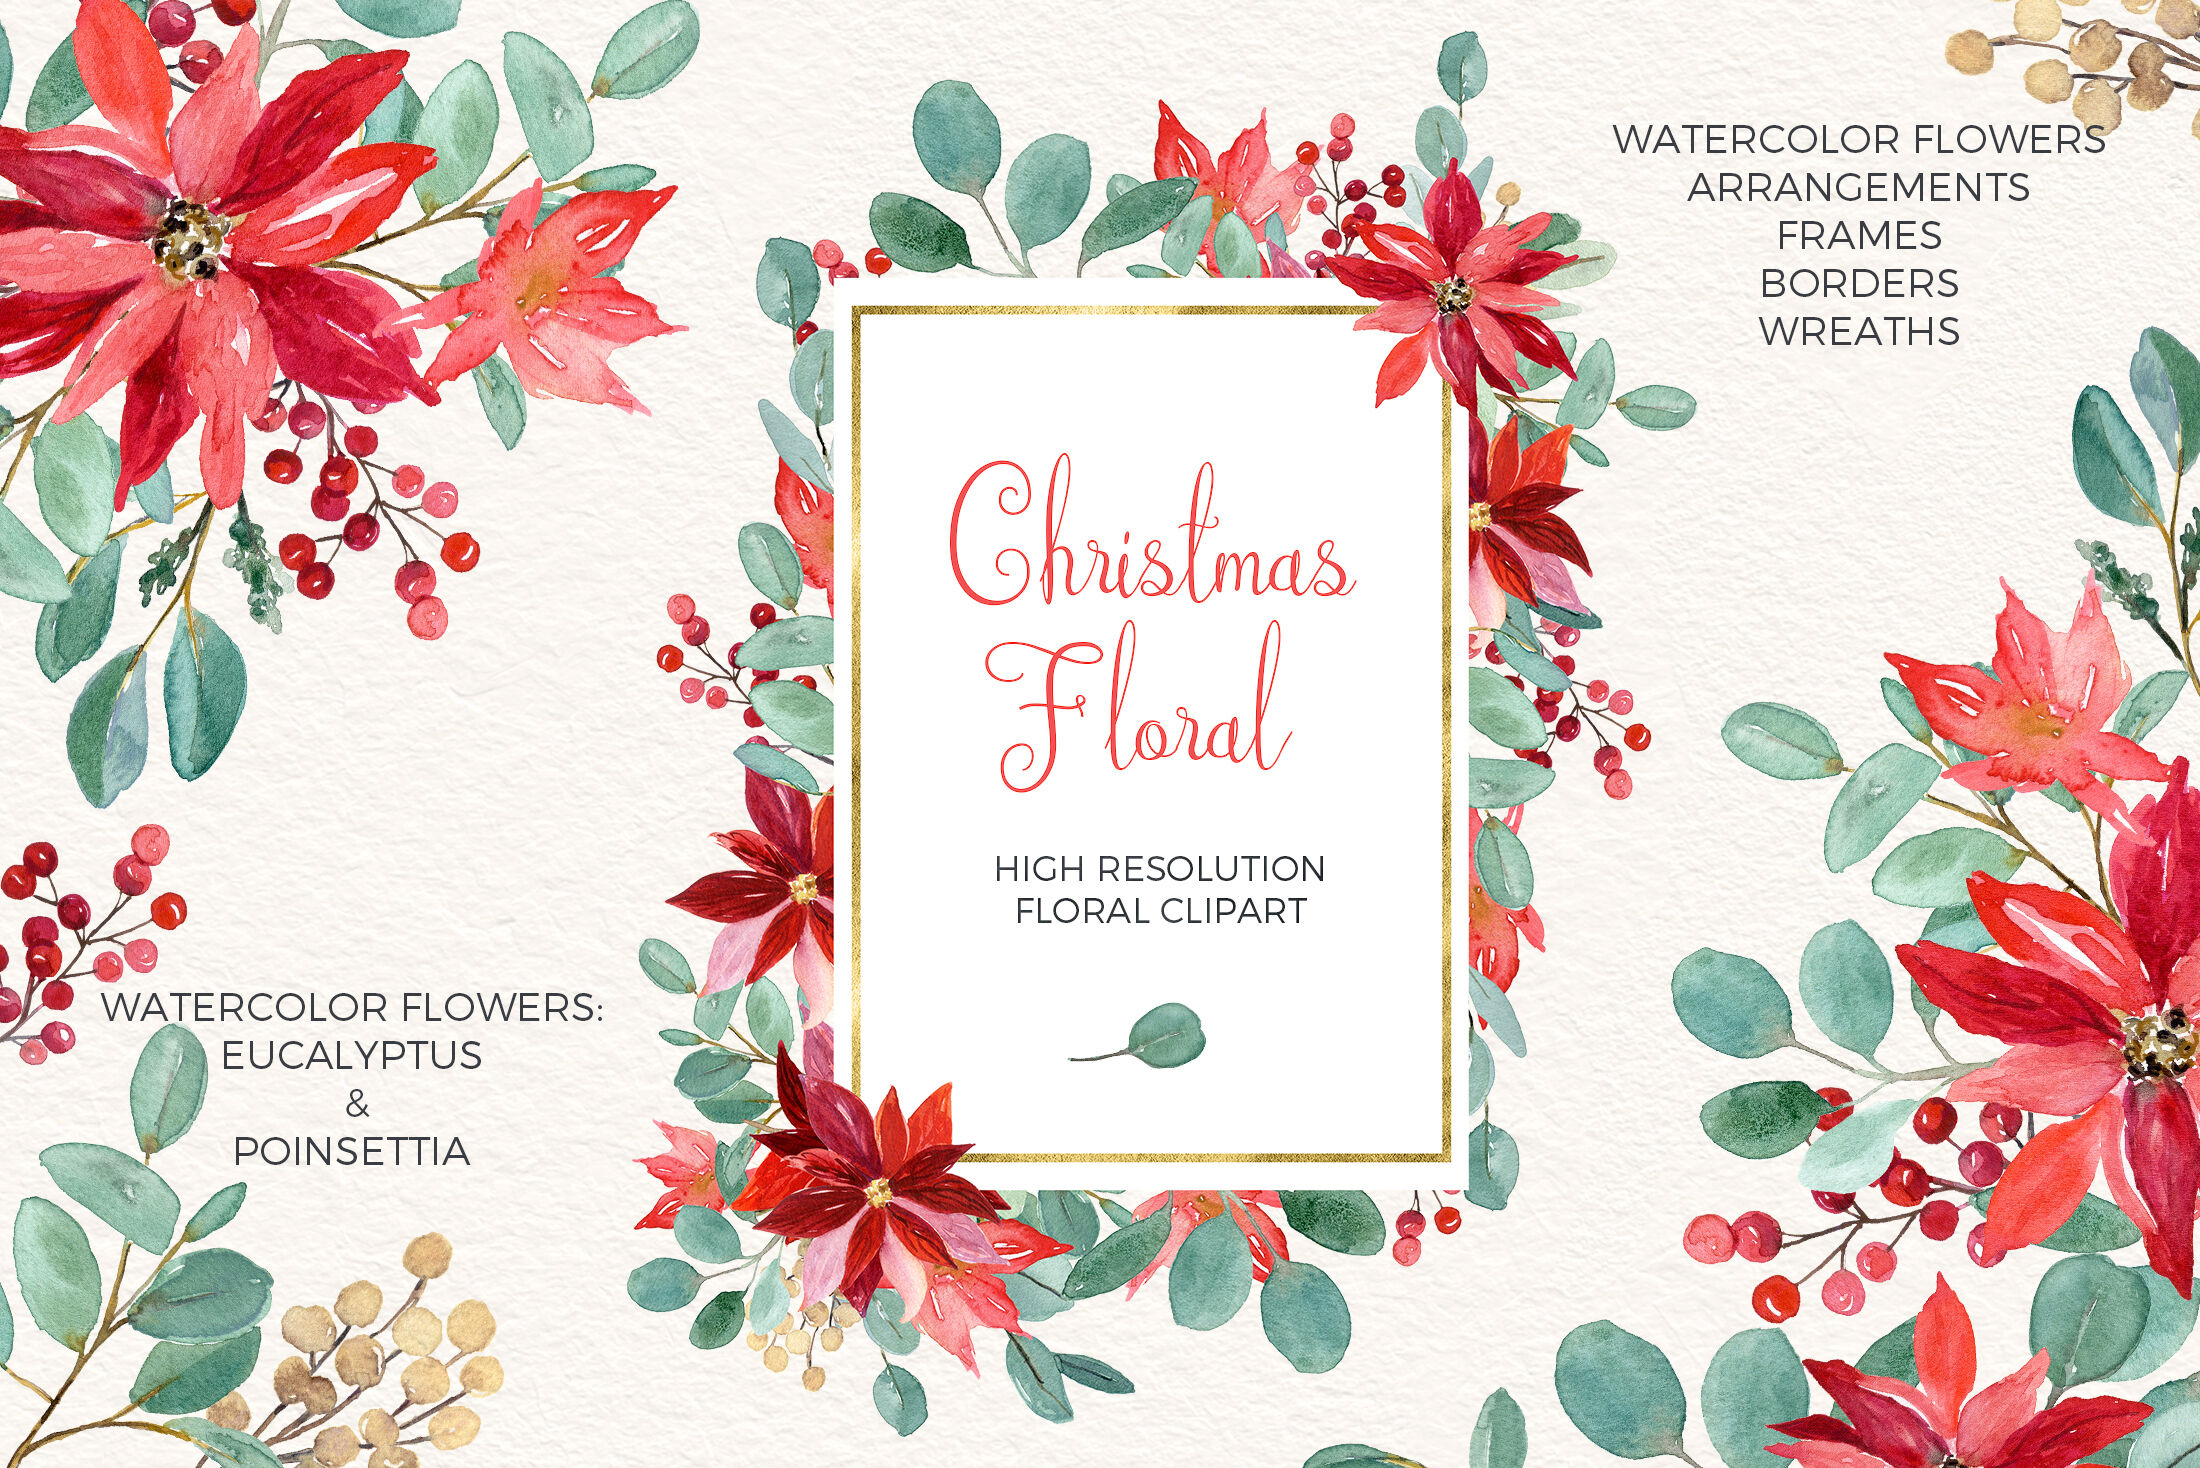 Watercolor Christmas Floral Arrangement, Poinsettia, Flowers